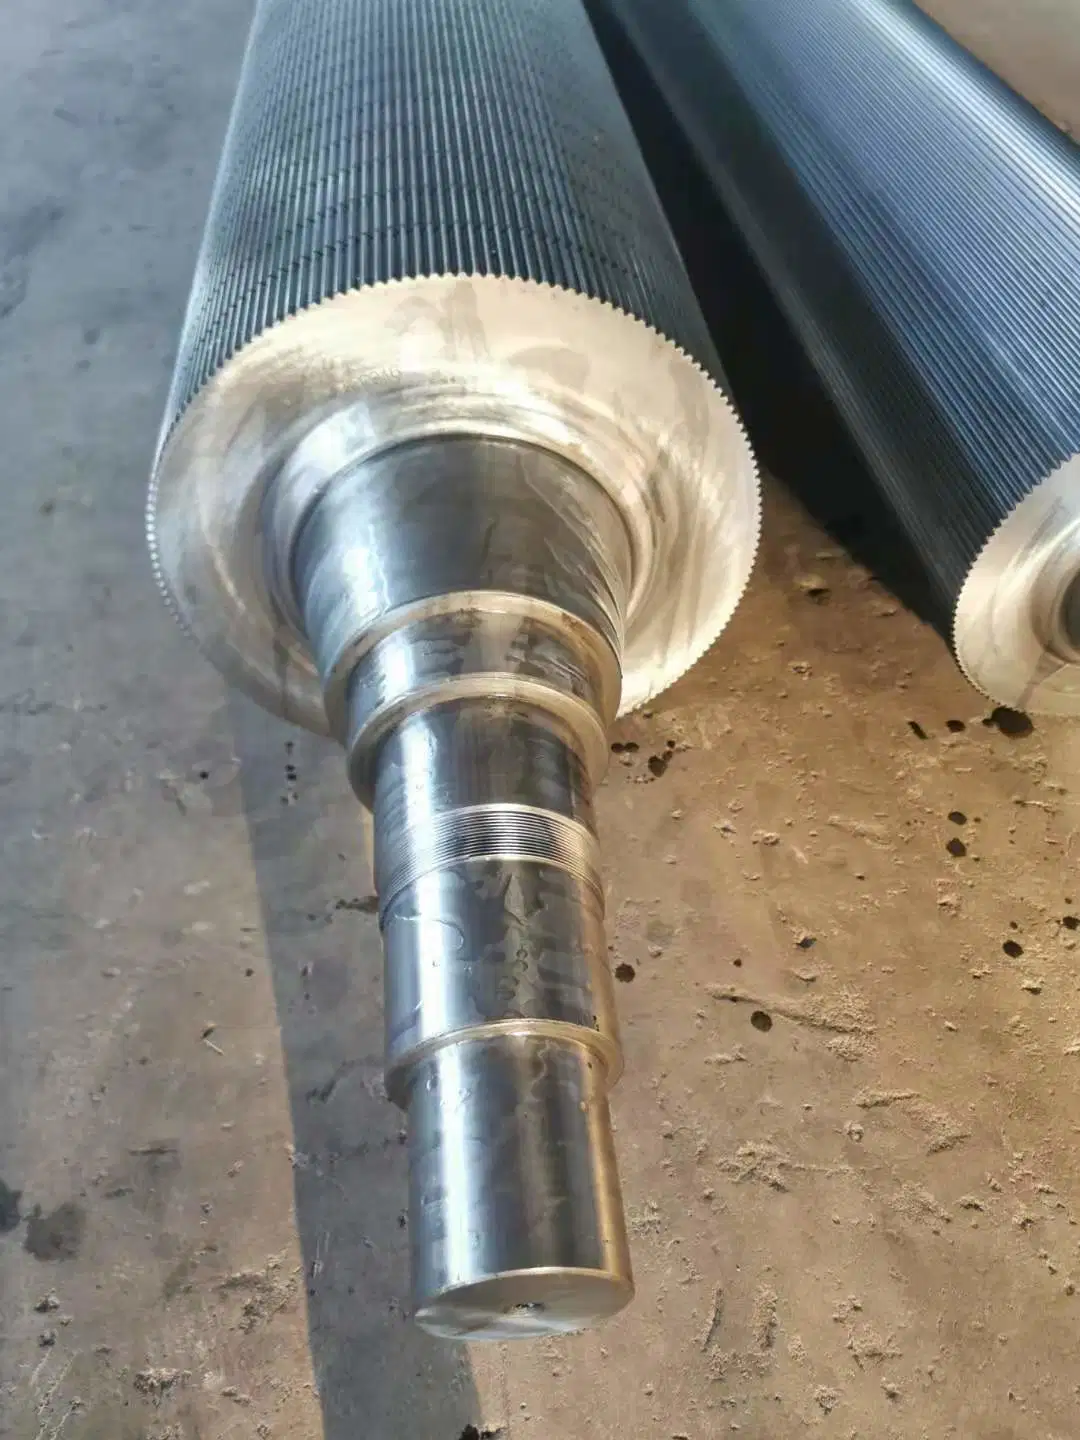 Professional High Precision Tungsten Carbide Corrugated Roller for Corrugated Carton